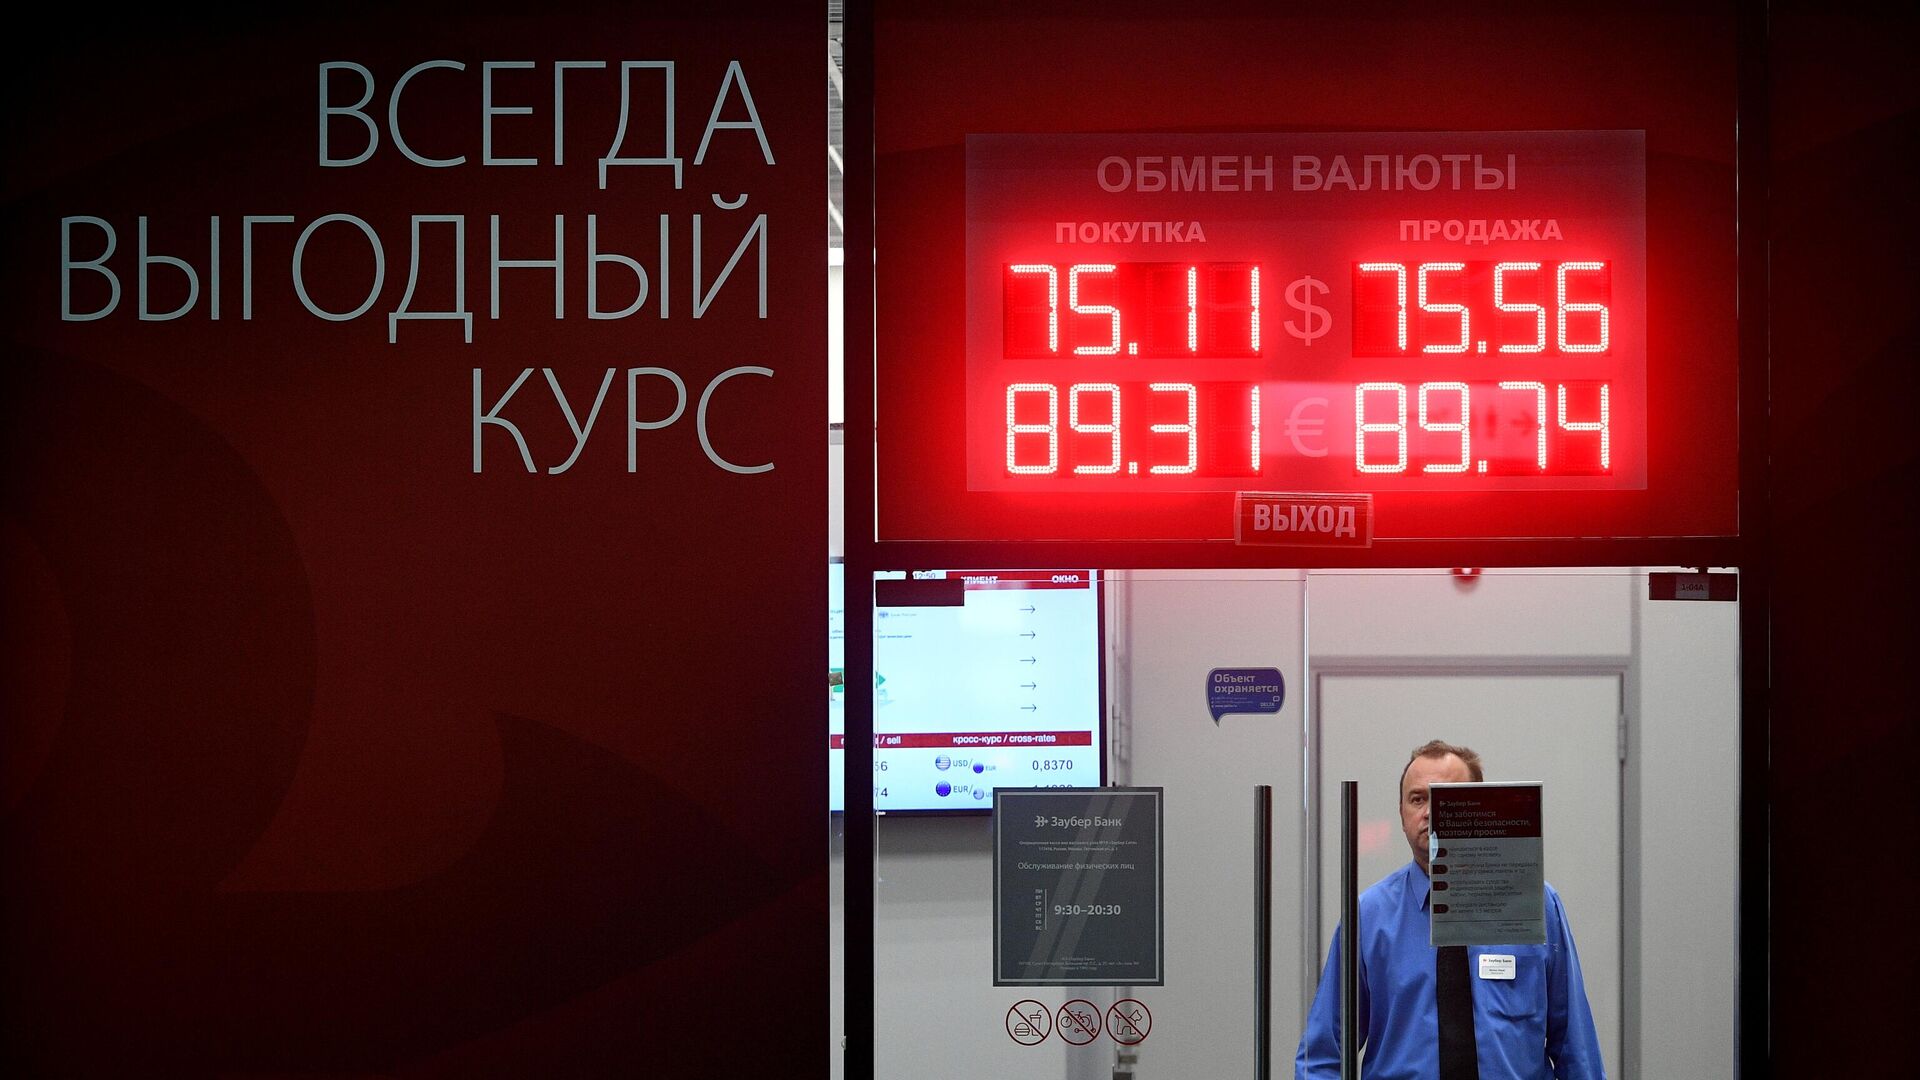 Пункт обмена валют в москвы на сегодня sha256 майнер купить